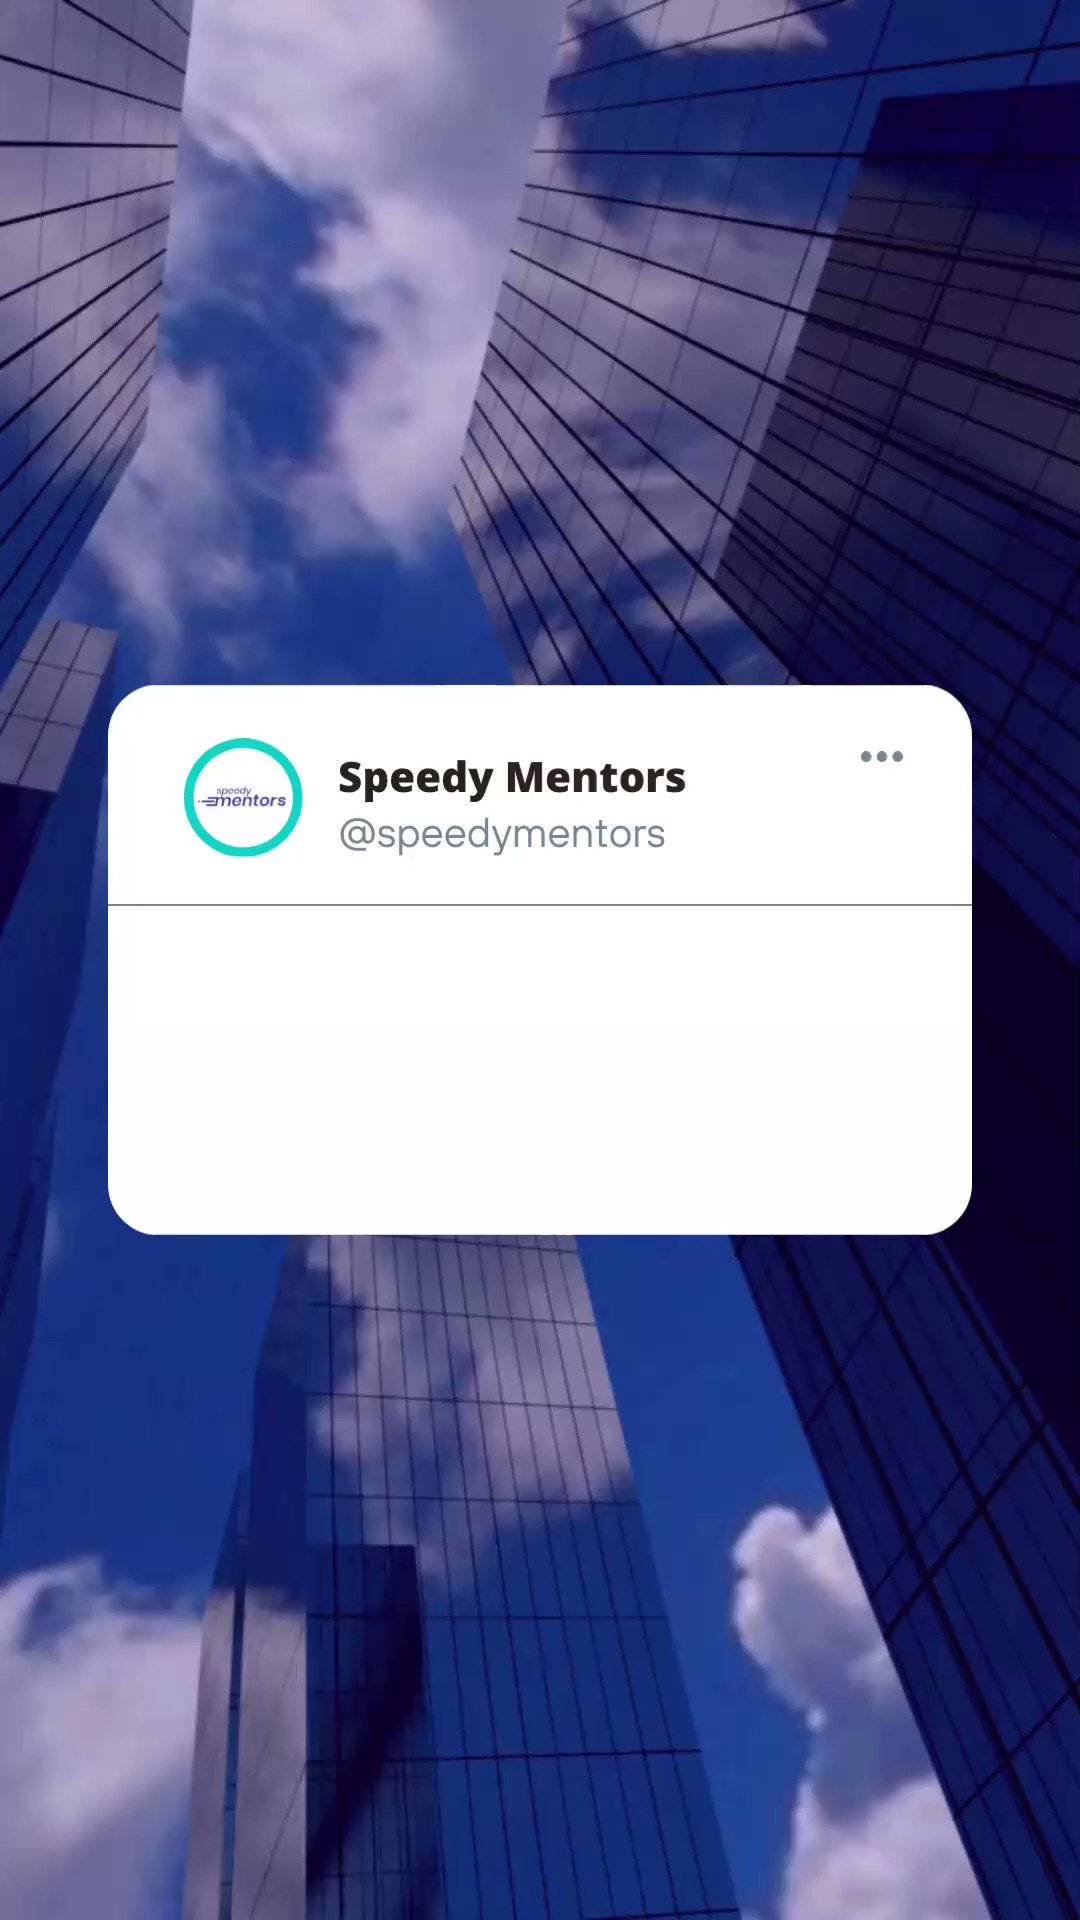 Speedy Mentors (@speedymentors) / X